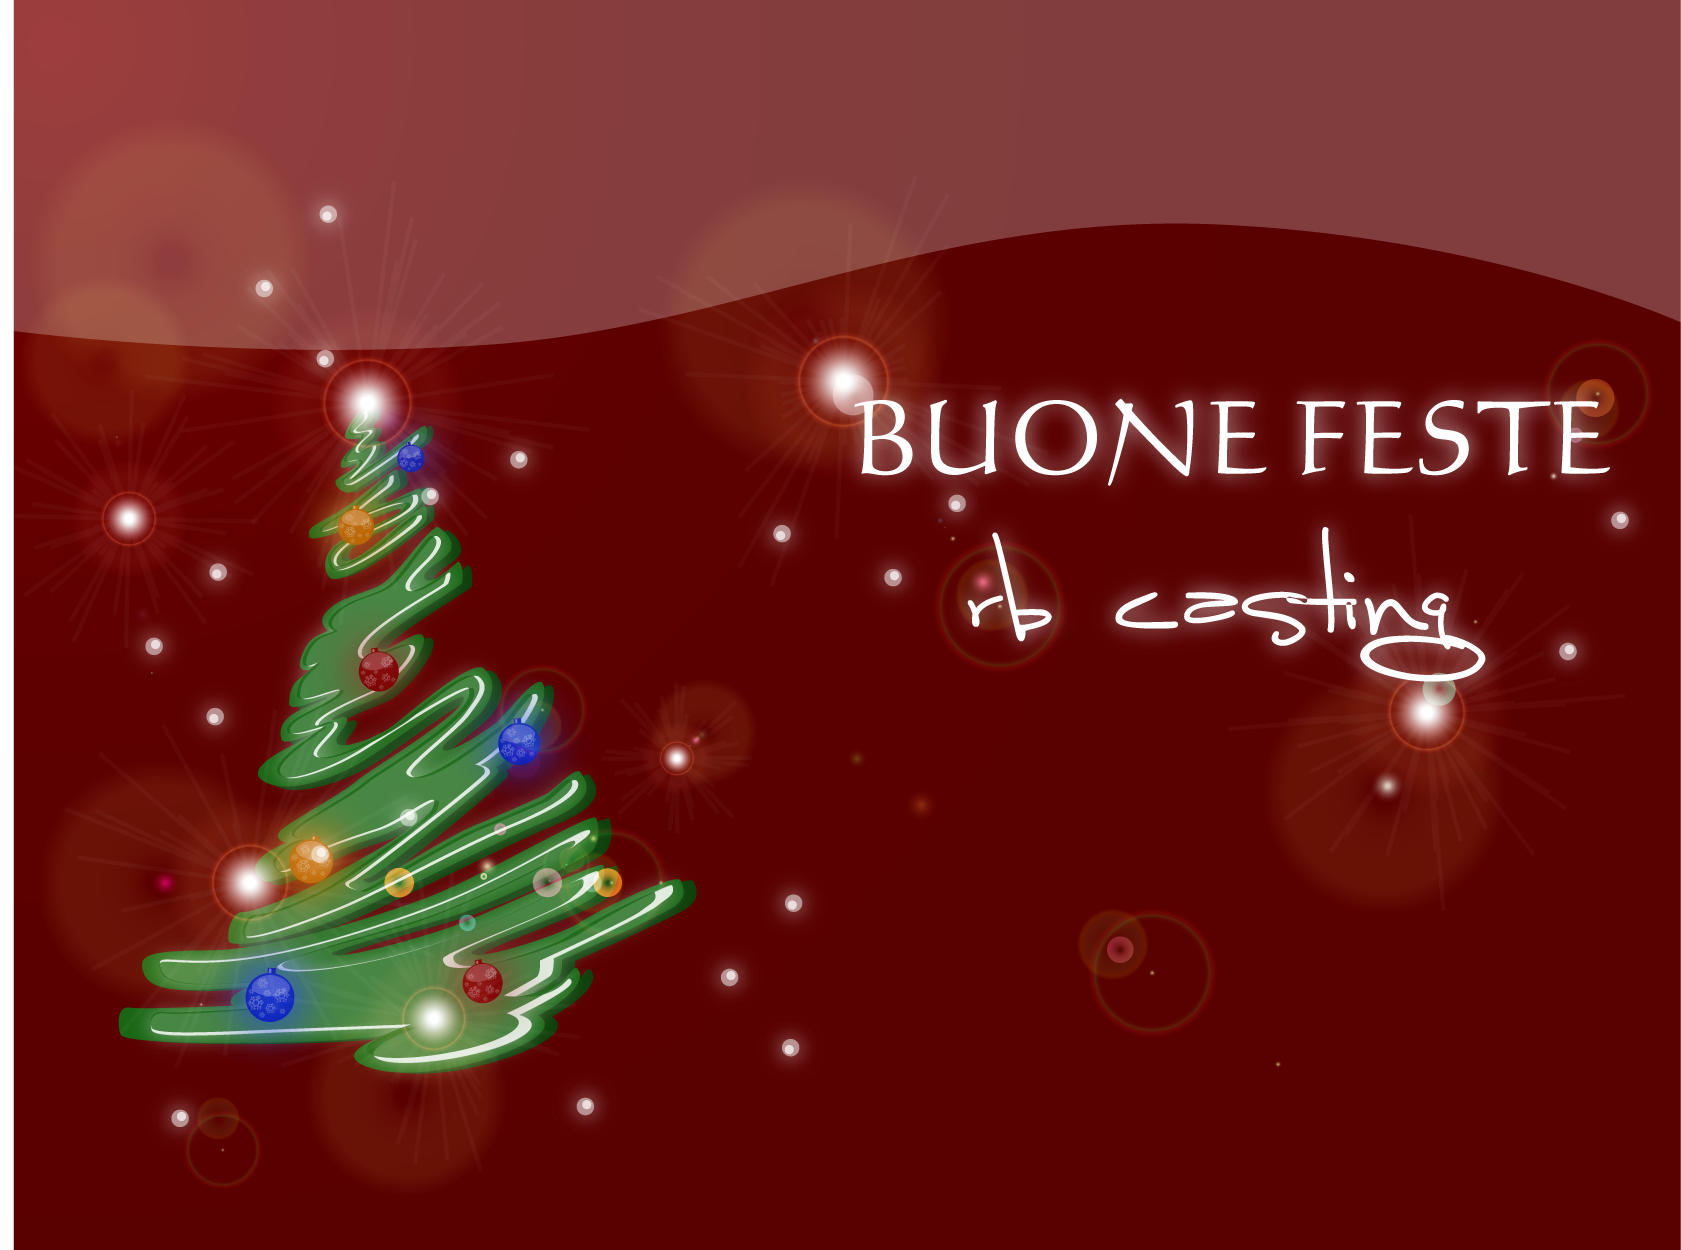 Foto Buone Feste Di Natale.435363 Buone Feste Rb Casting Albero Di Natale Firmato Rb Casting